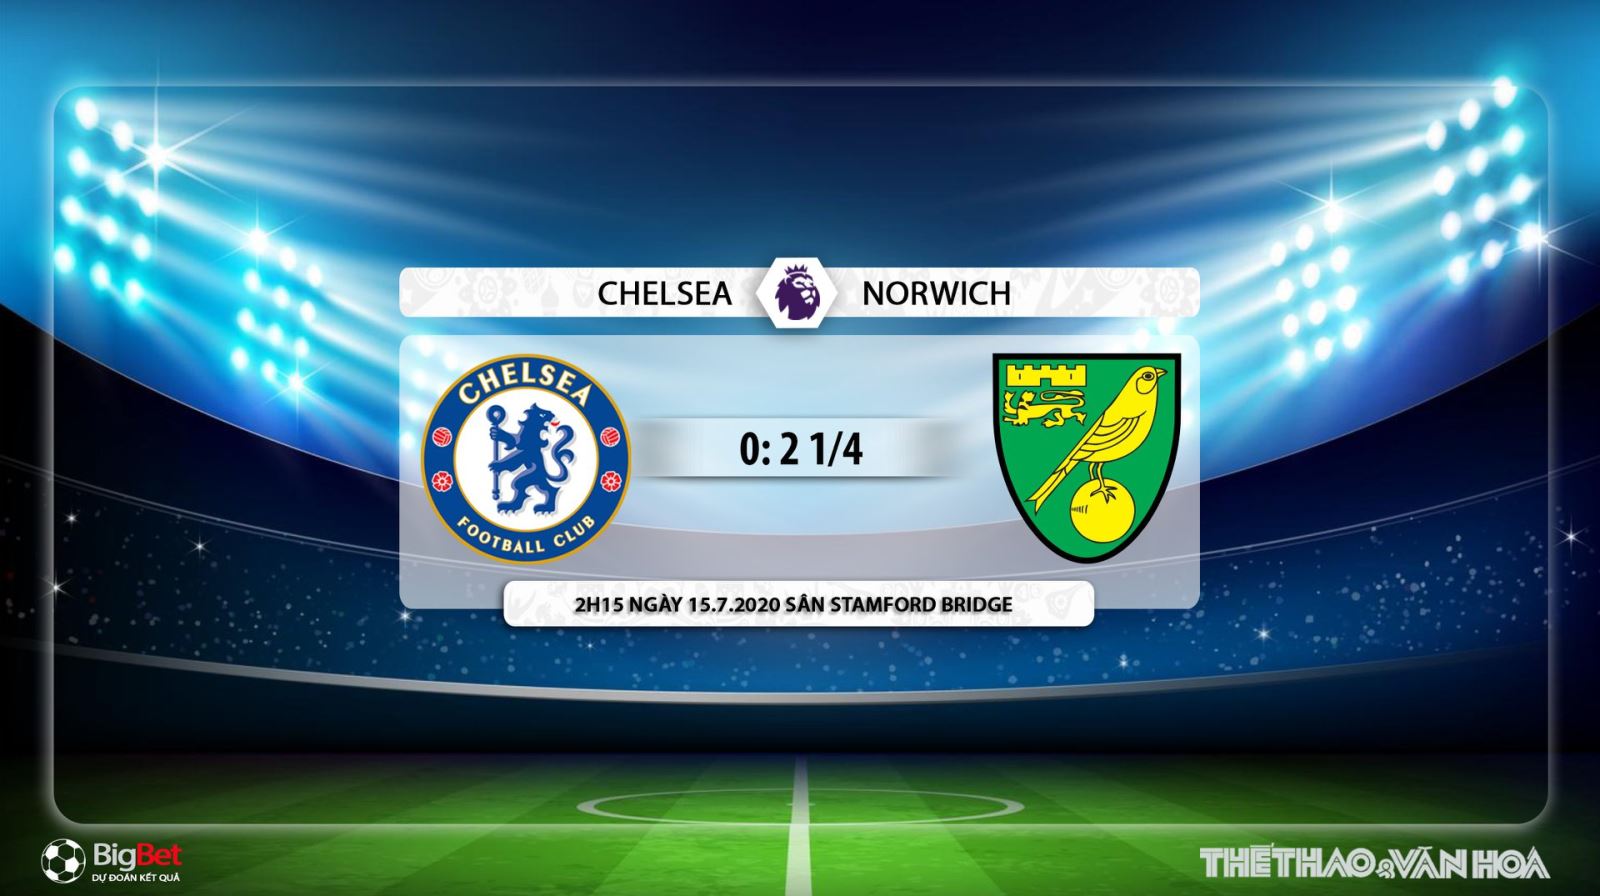 Chelsea vs Norwich, Chelsea, Norwich, trực tiếp bóng đá, bóng đá, trực tiếp, nhận định bóng đá, kèo bóng đá, nhận định bóng đá Chelsea vs Norwich